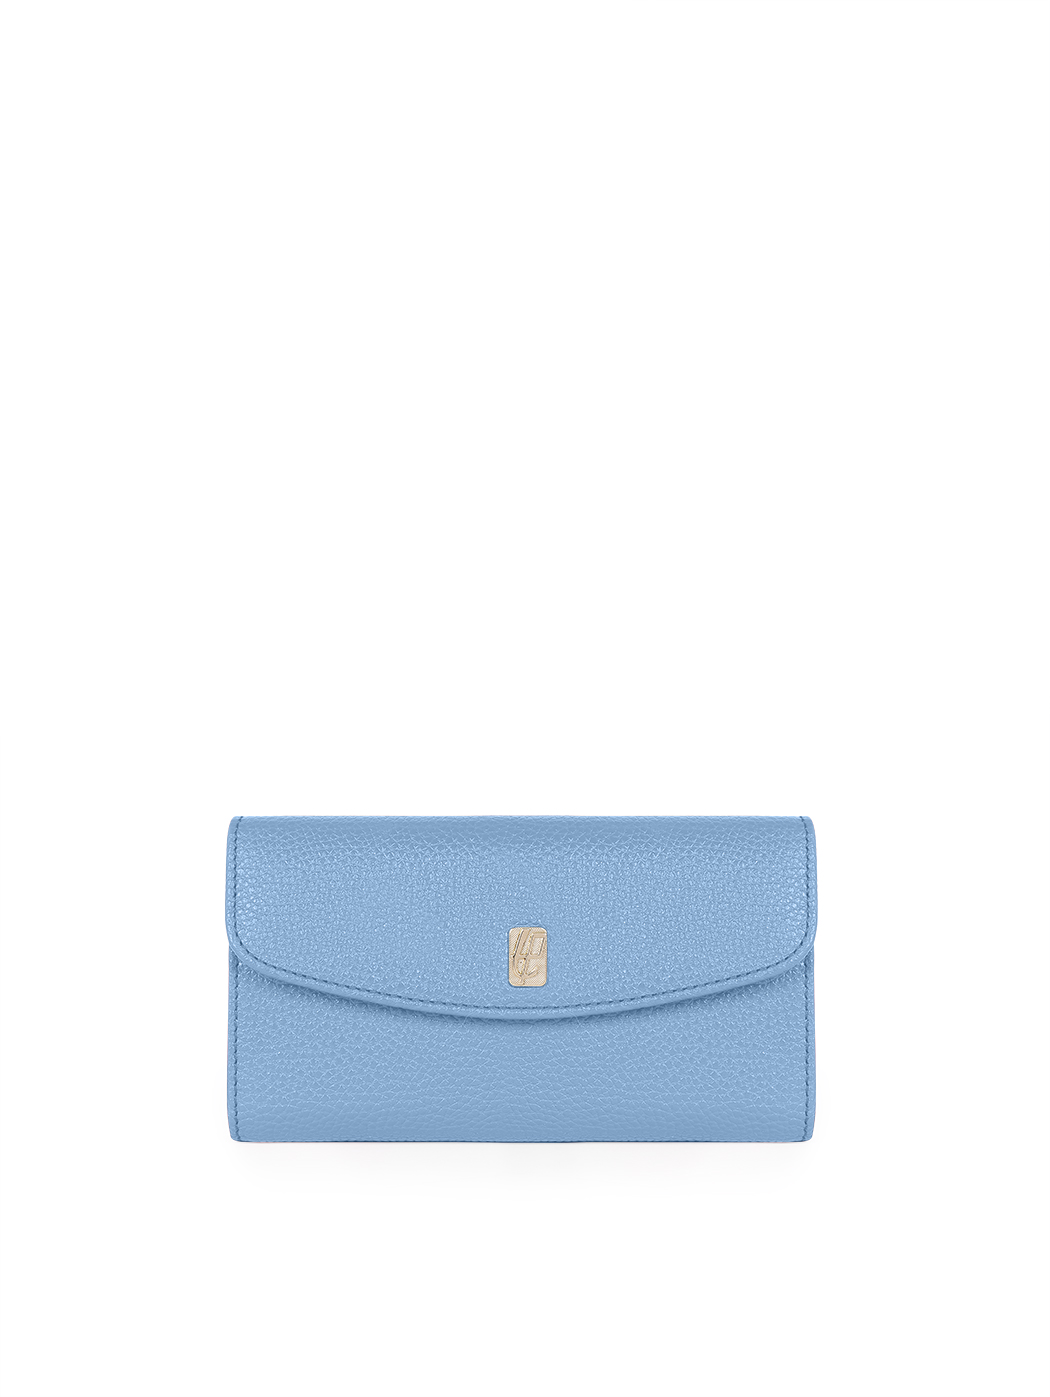 Женский кожаный кошелек светло - голубого цвета